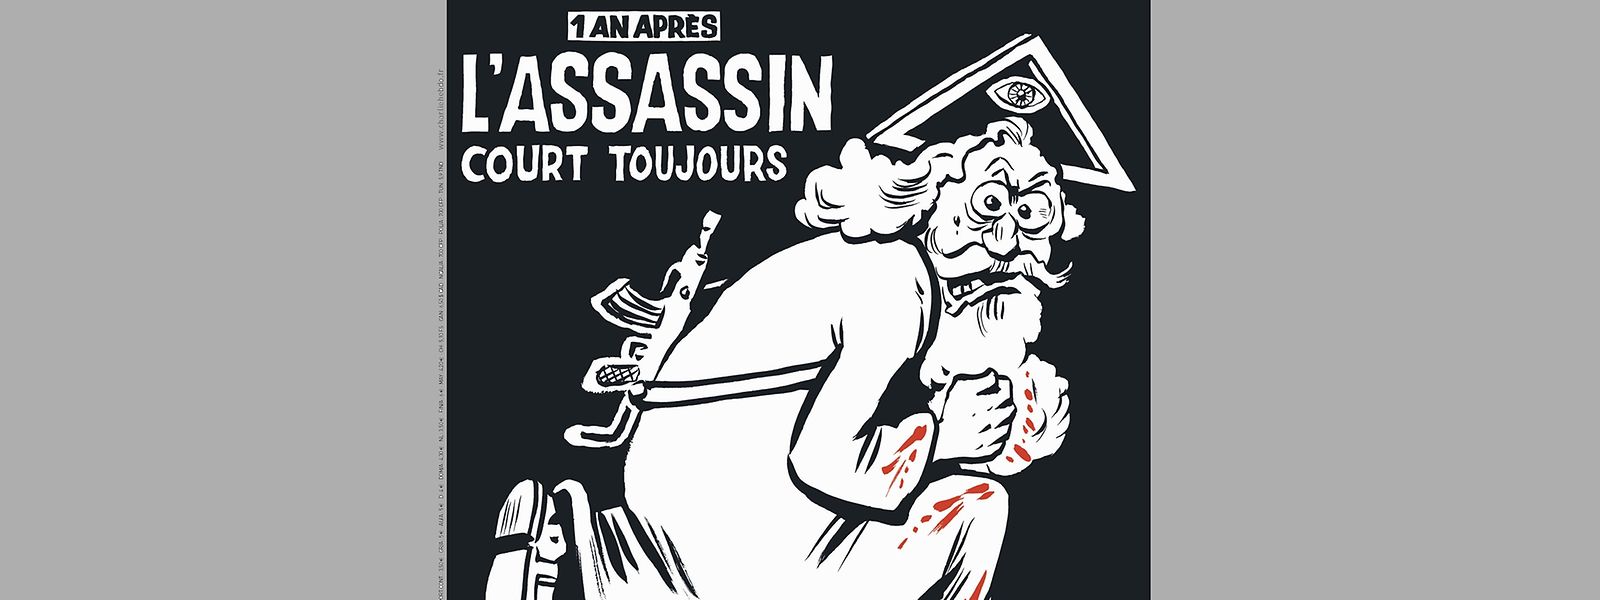 Die Titelseite von "Charlie Hebdo".